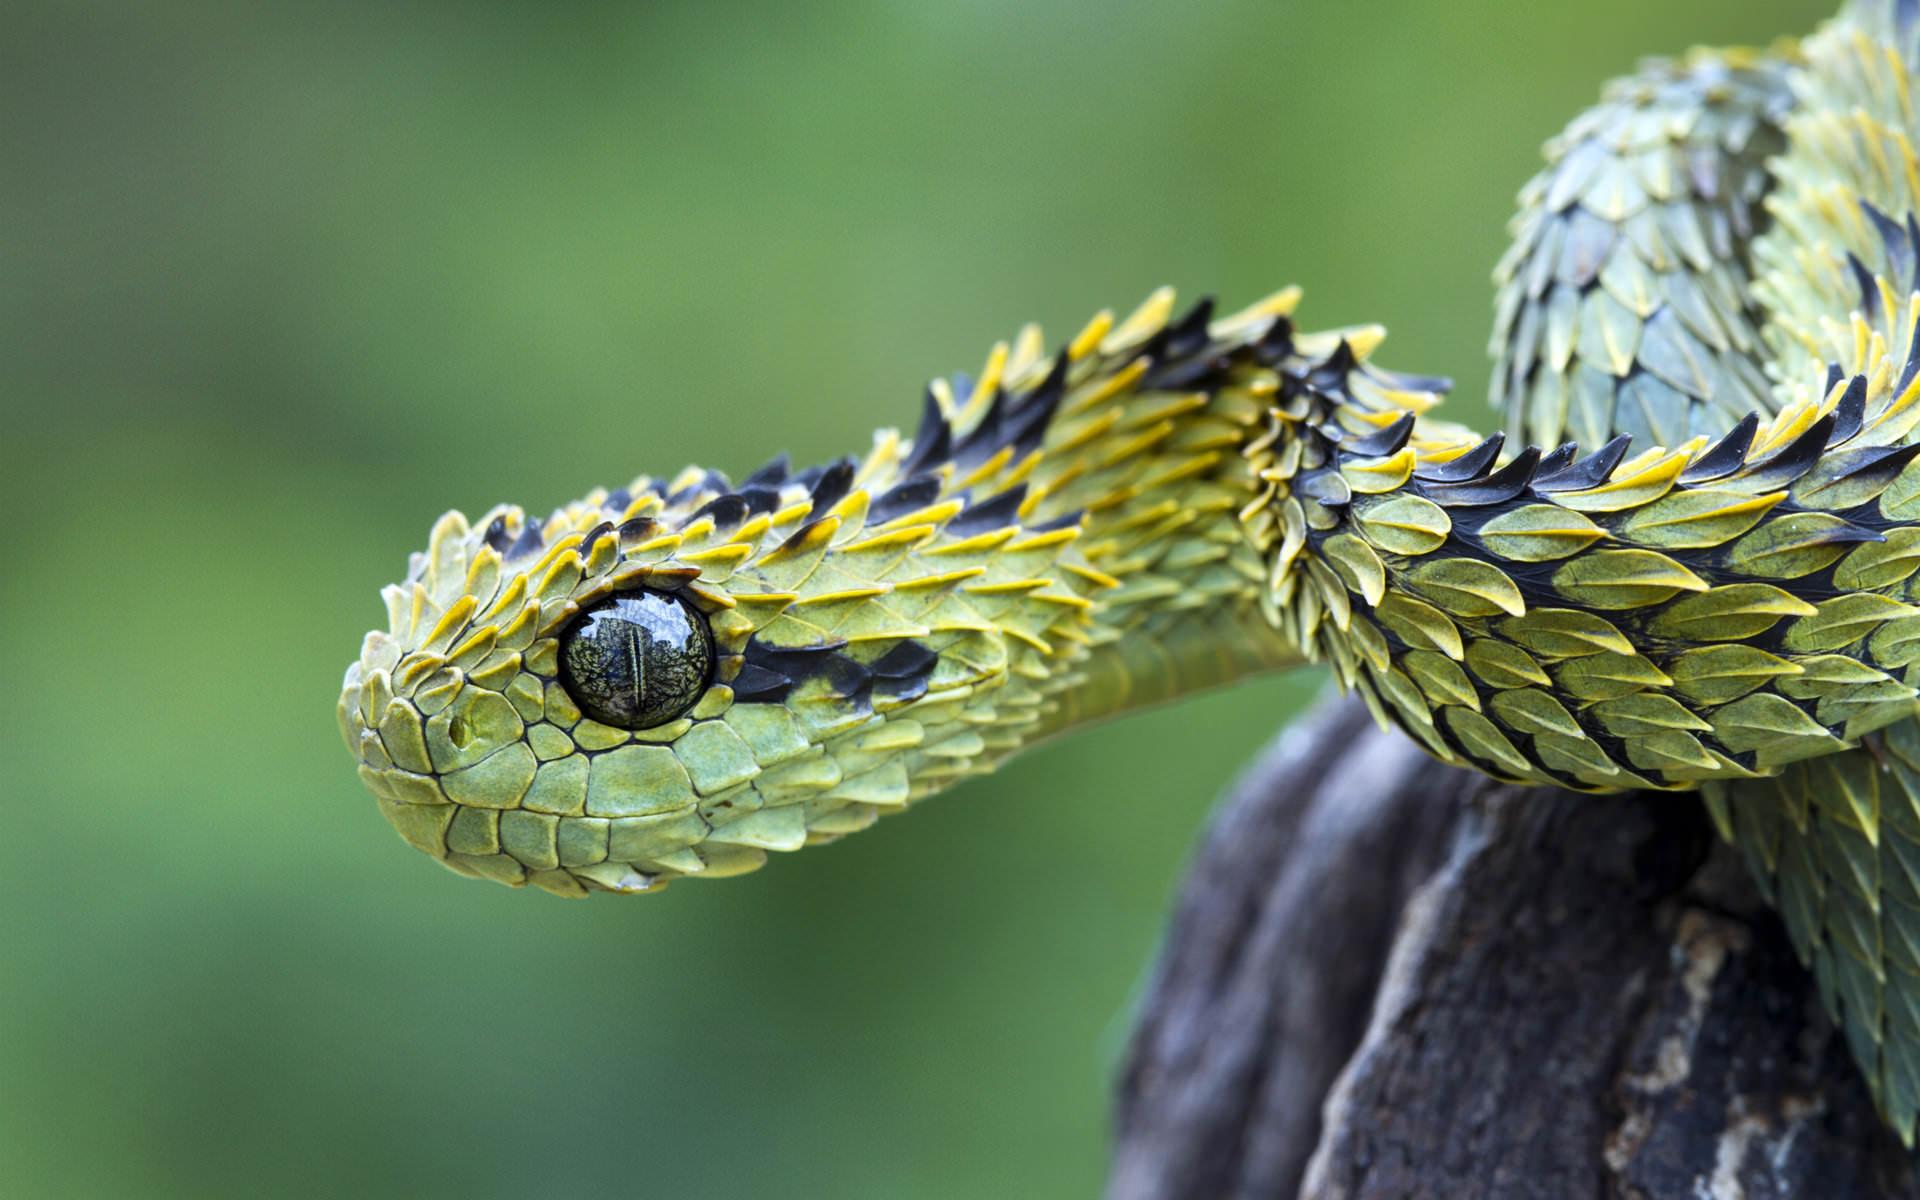 Viper snake wallpaper HD for desktop background